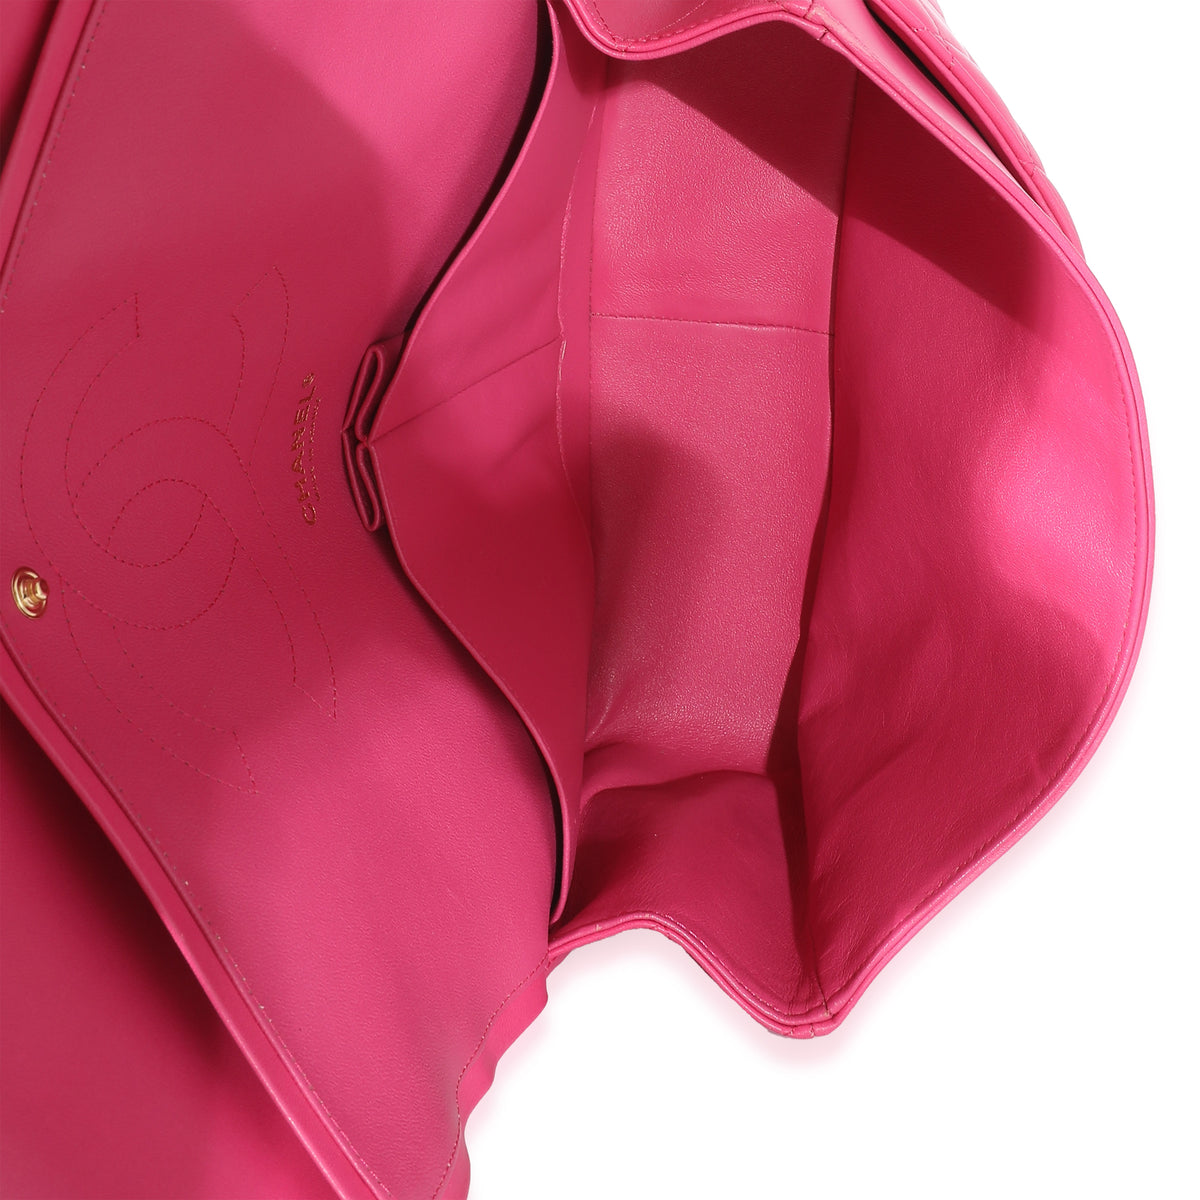 Chanel Pink Lambskin Jumbo Classic Double Flap Bag